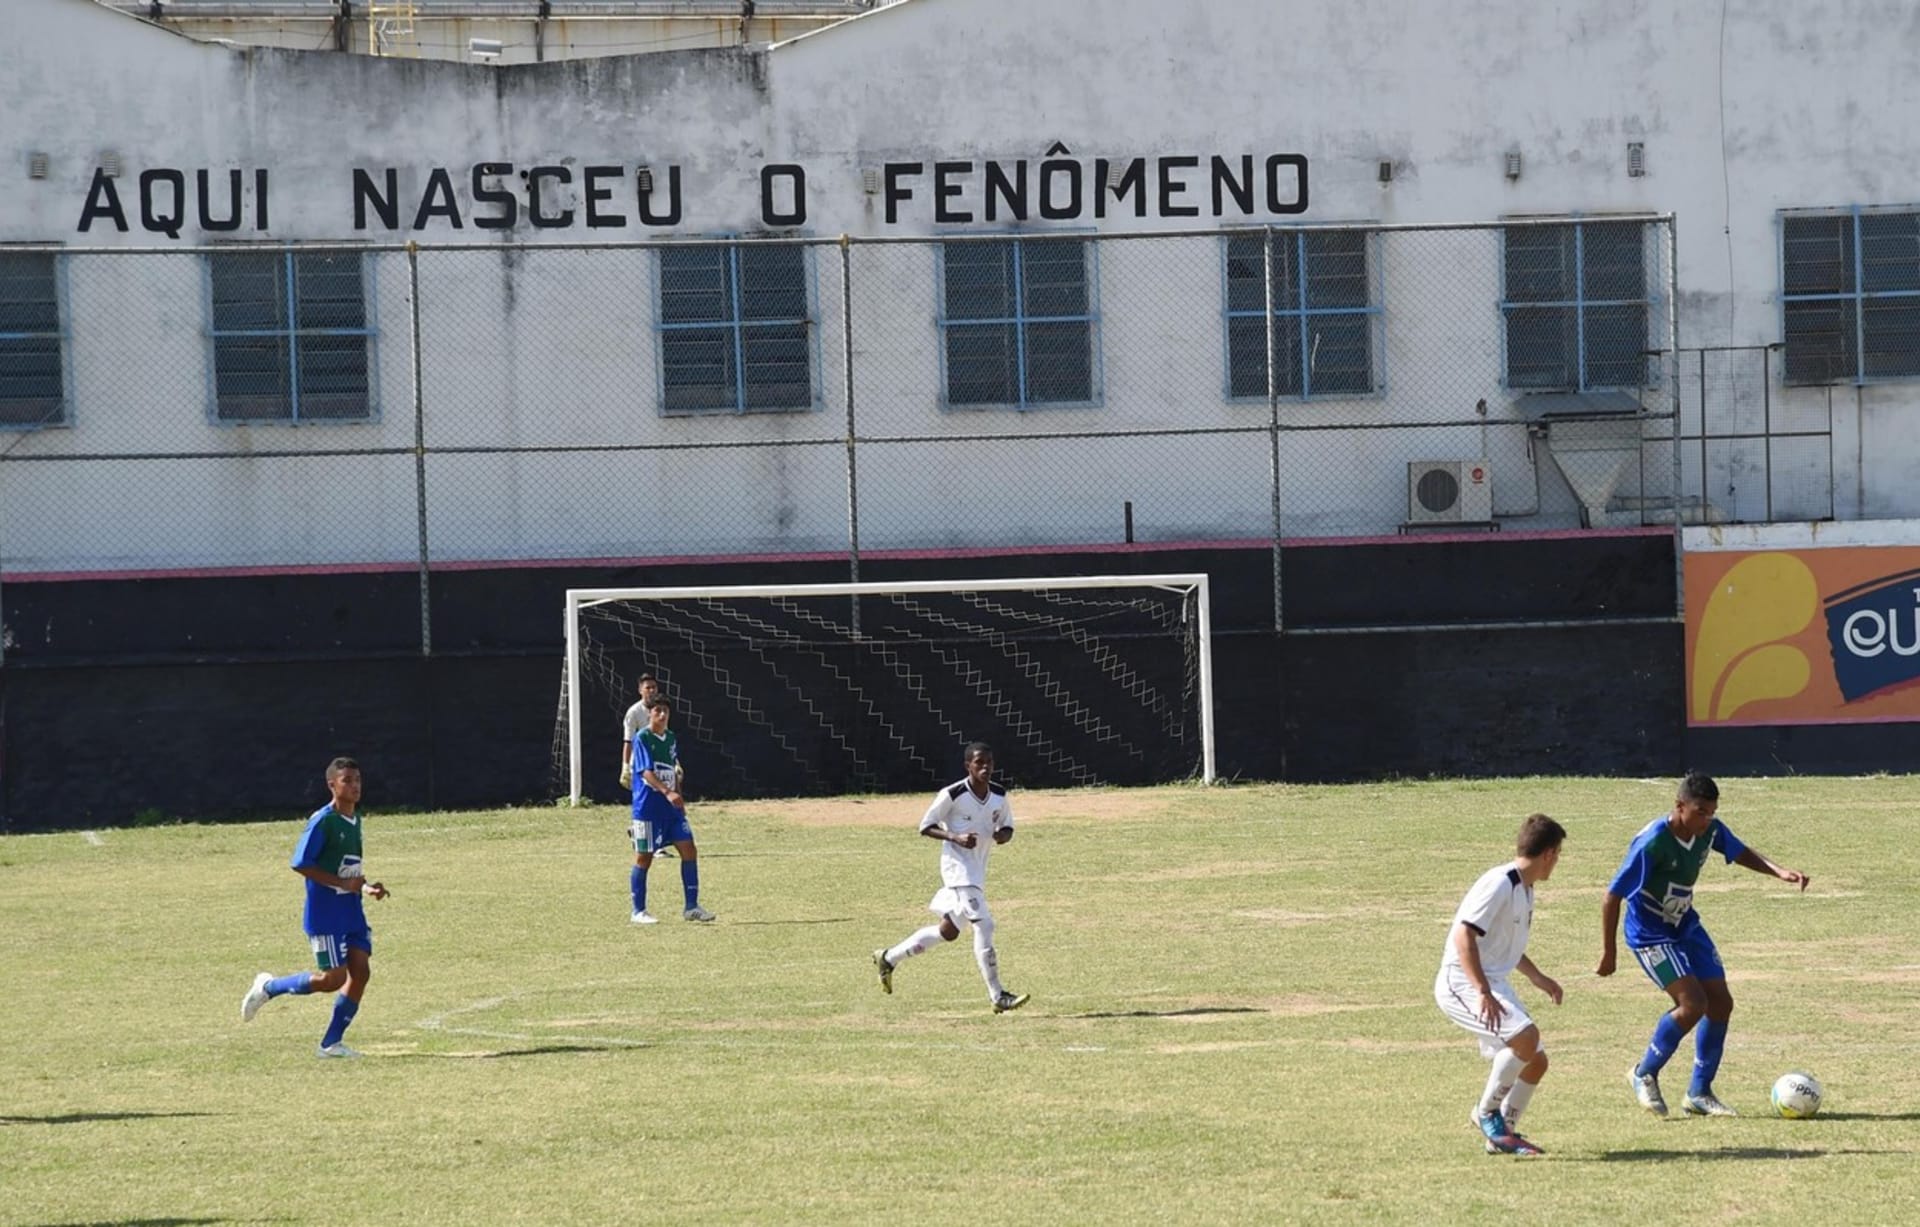 Stadion San Cristováo v Riu de Janeiru a nápis Zde se zrodil fenomén.  Foto: Profimedia.cz